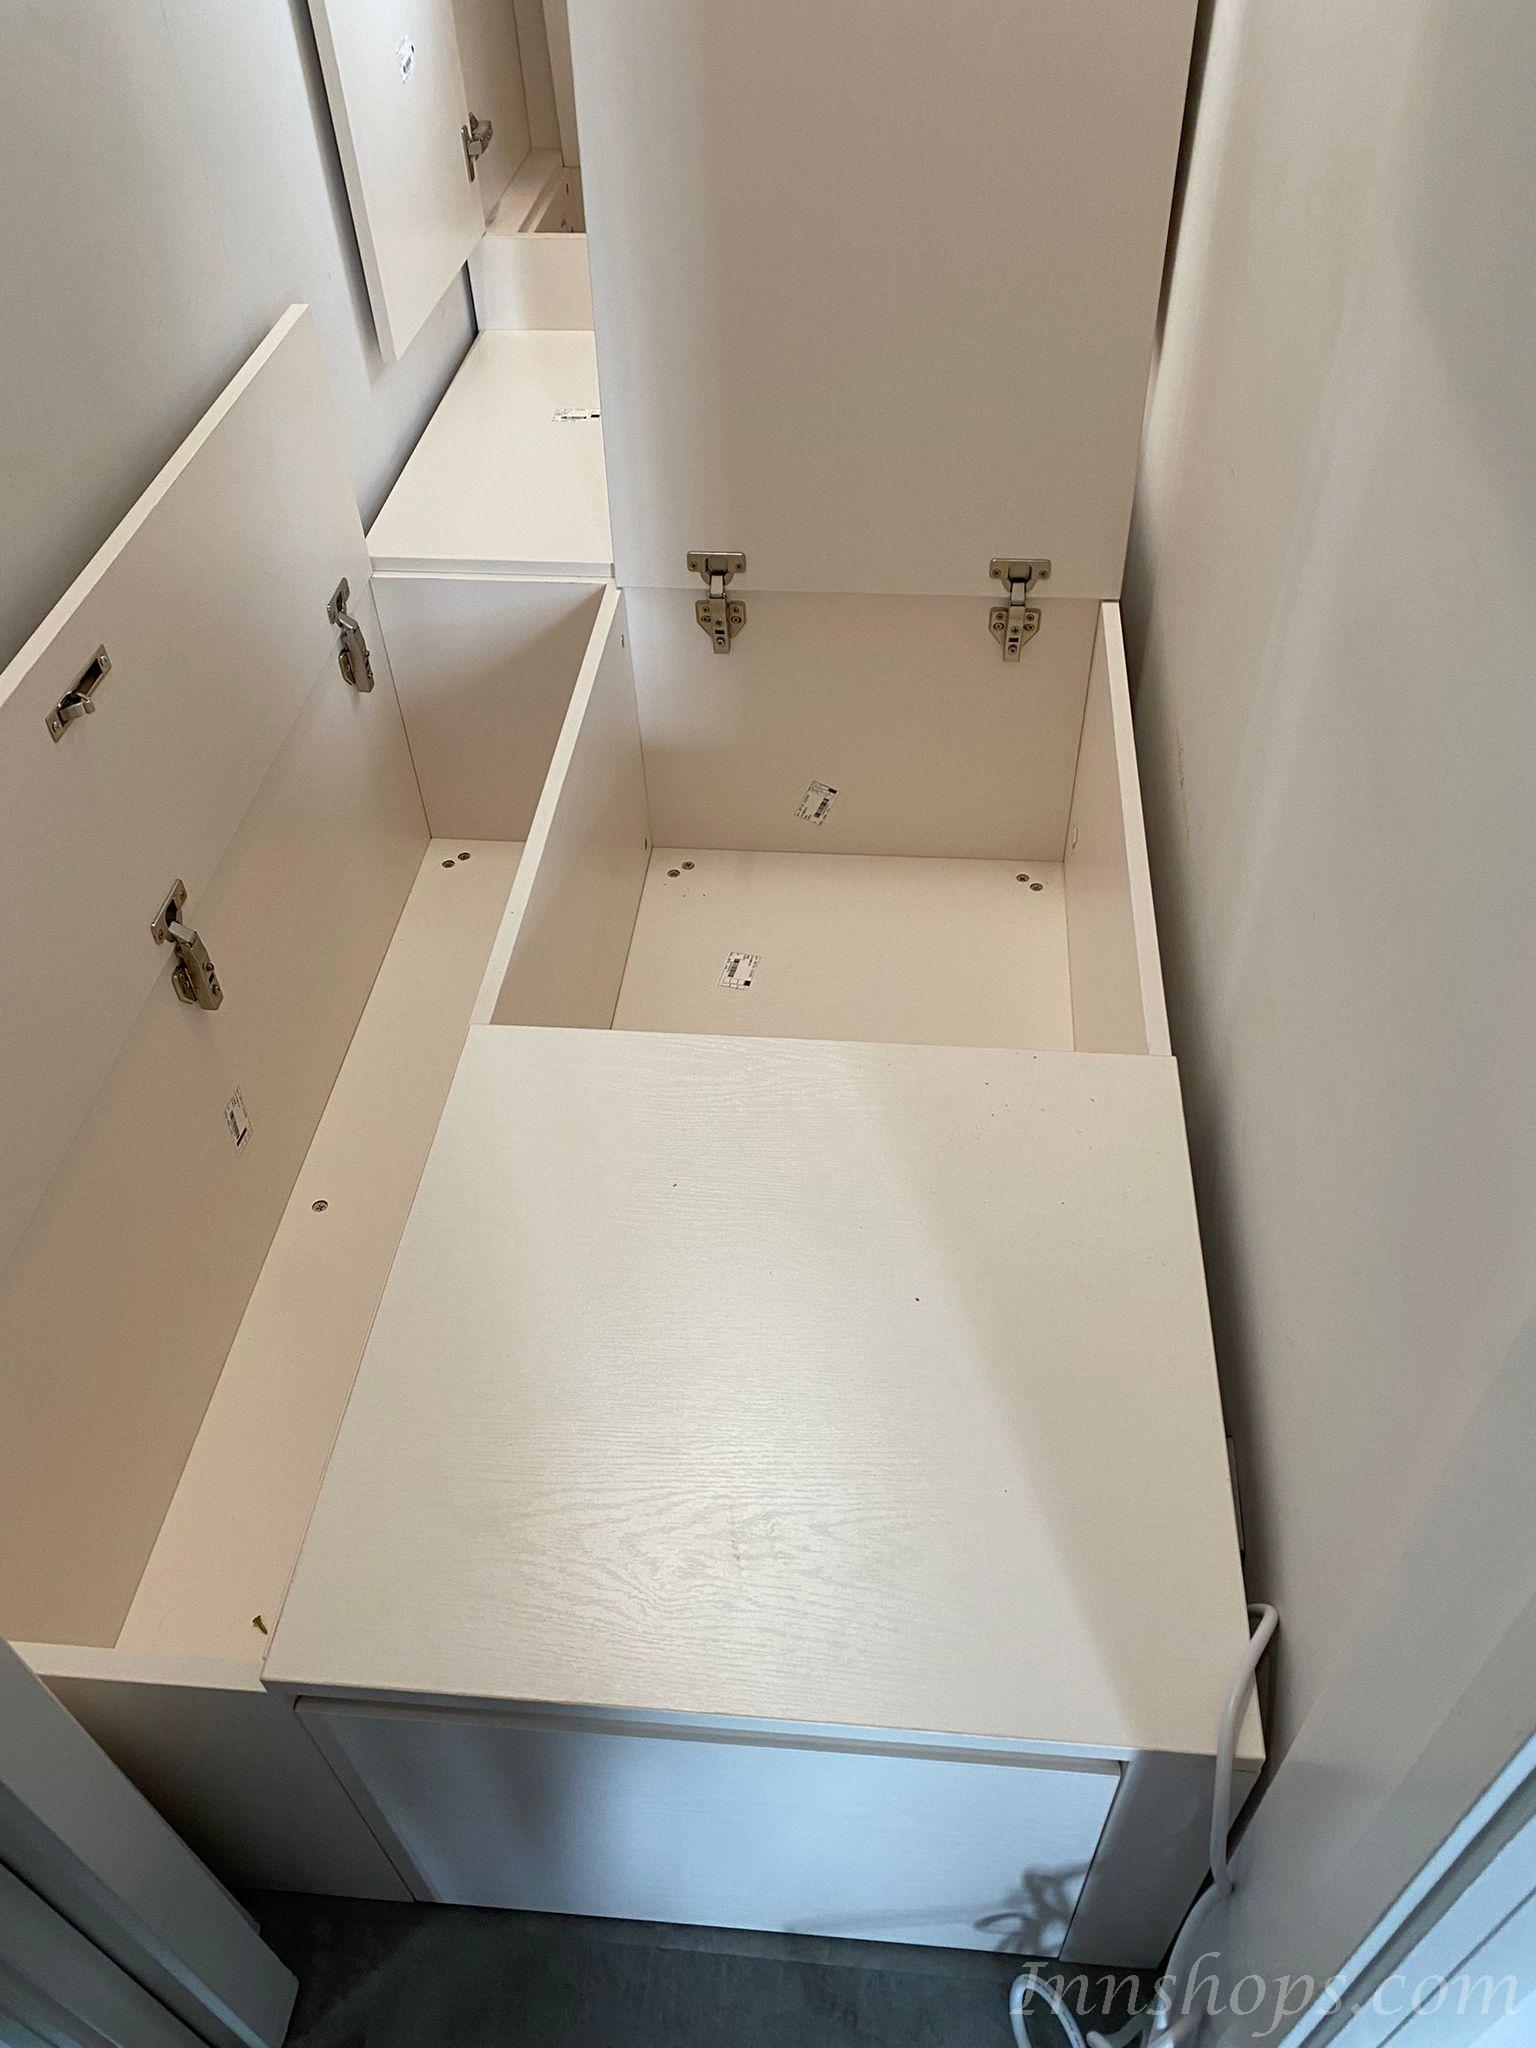 訂造多功能組合床衣櫃床+1櫃桶可自訂呎吋不包床褥(IS6819)